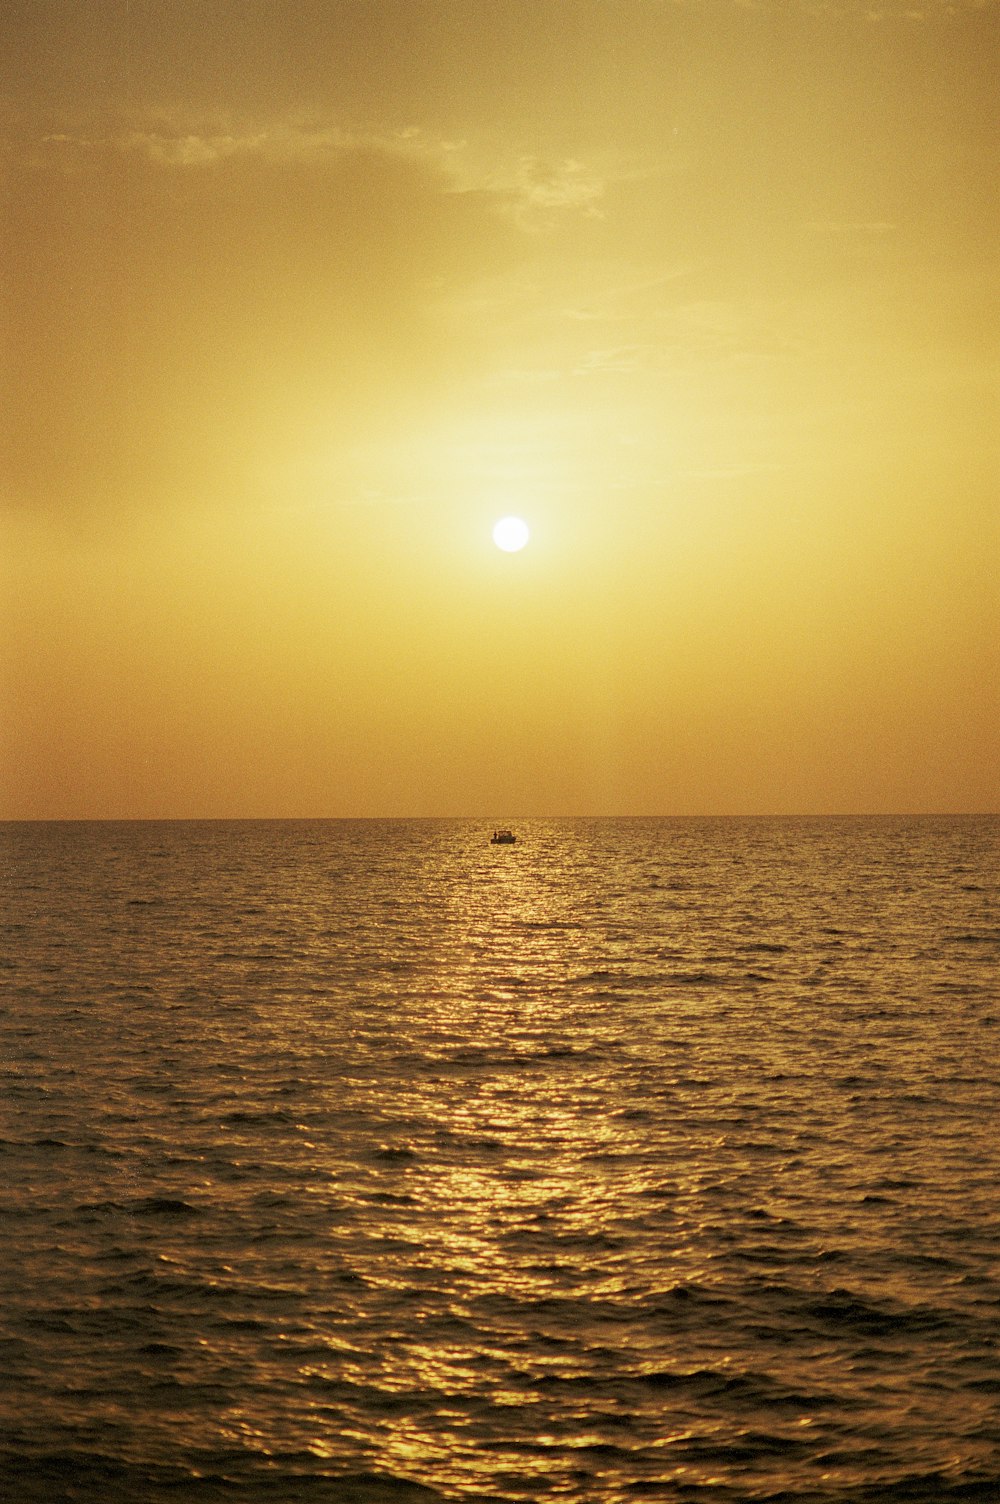 El sol se está poniendo sobre el océano con un bote en la distancia